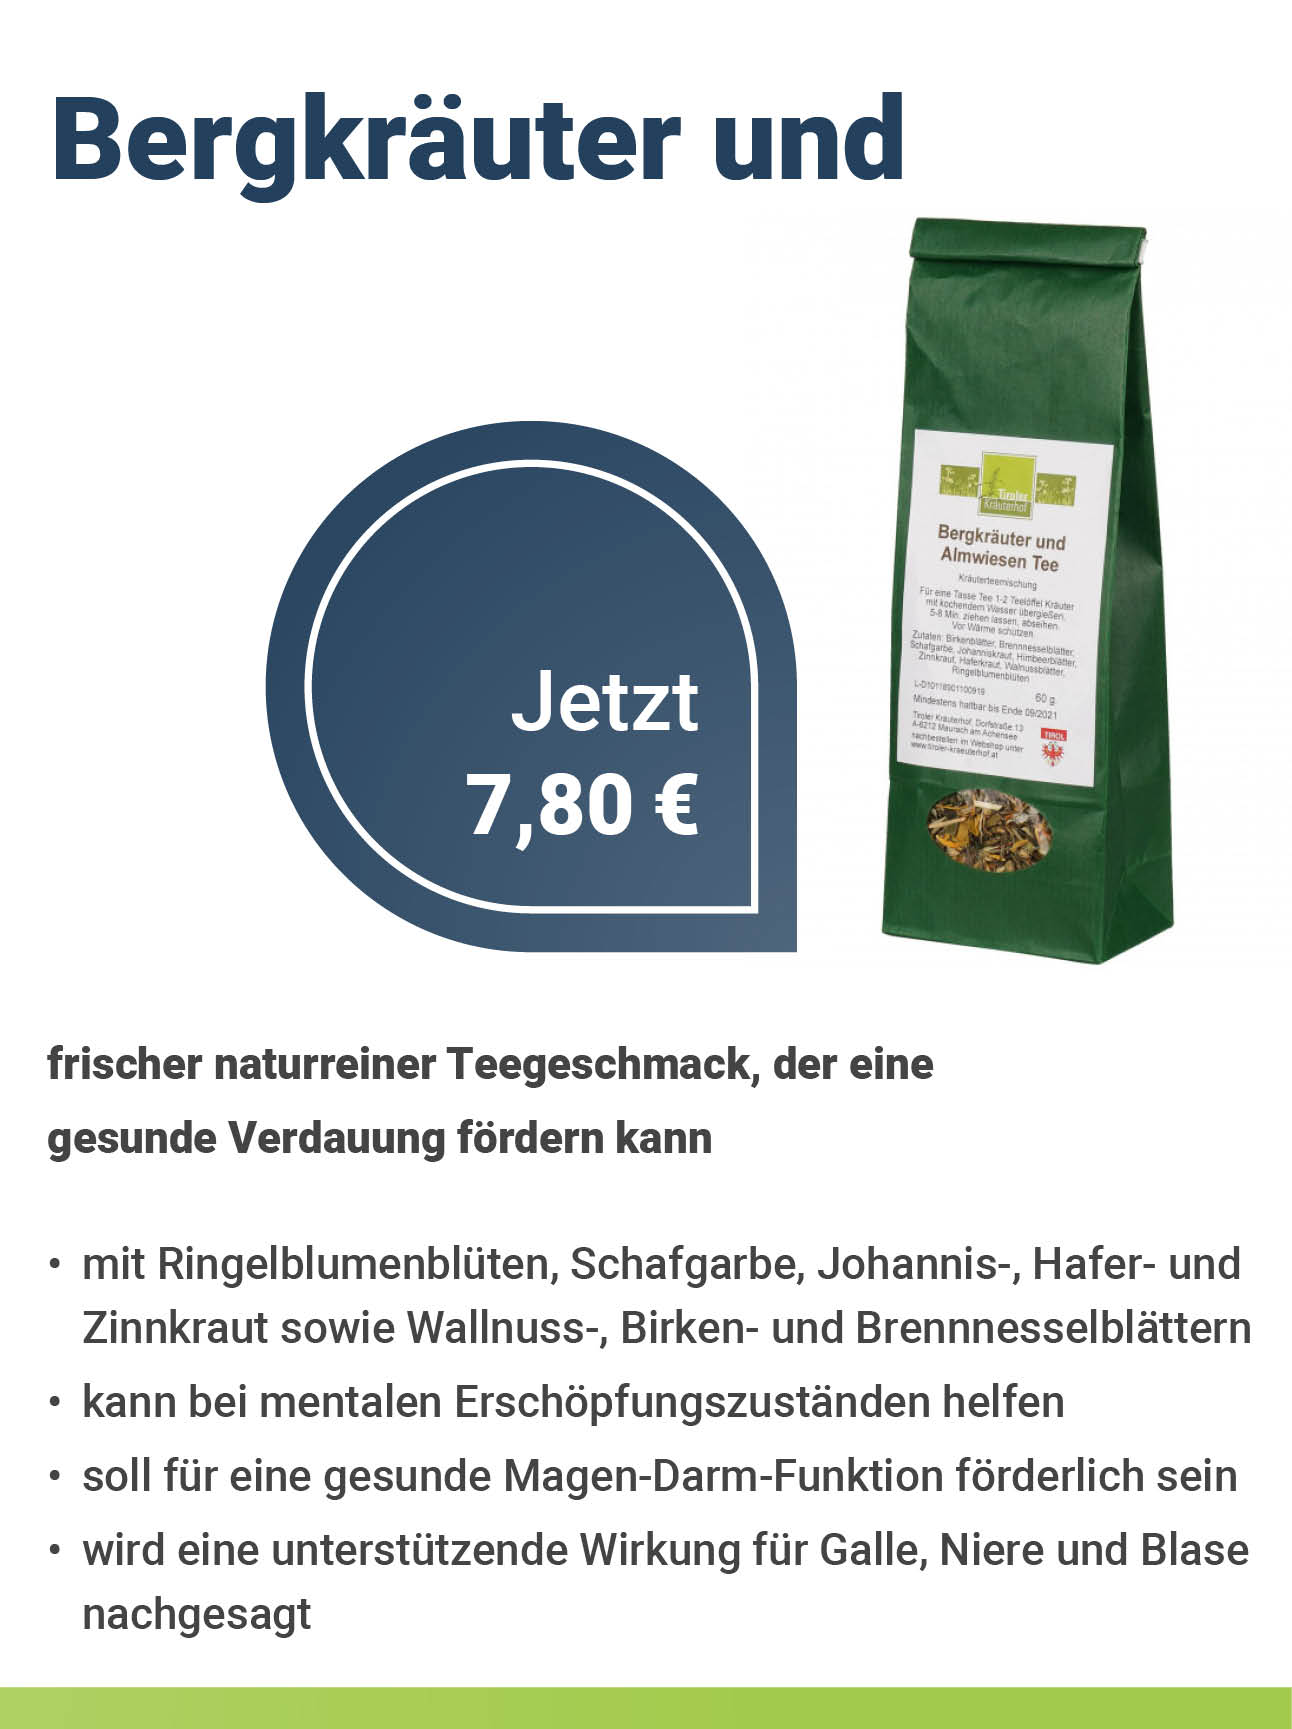 Tiroler Kräuterhof Bergkräuter und Almwiesen Tee